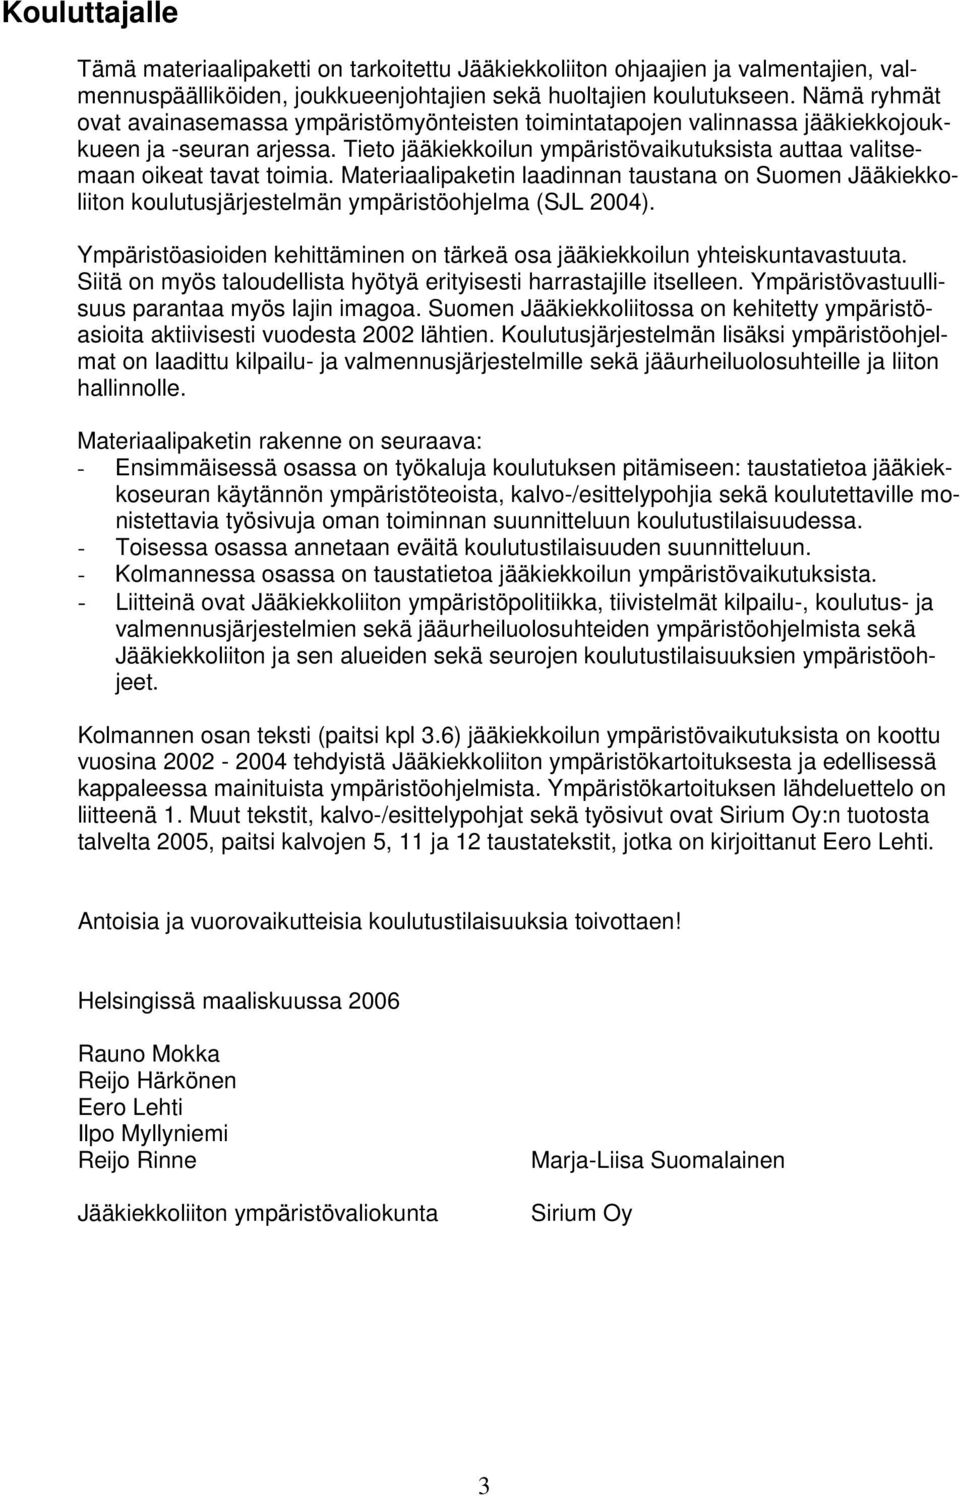 Materiaalipaketin laadinnan taustana on Suomen Jääkiekkoliiton koulutusjärjestelmän ympäristöohjelma (SJL 2004). Ympäristöasioiden kehittäminen on tärkeä osa jääkiekkoilun yhteiskuntavastuuta.